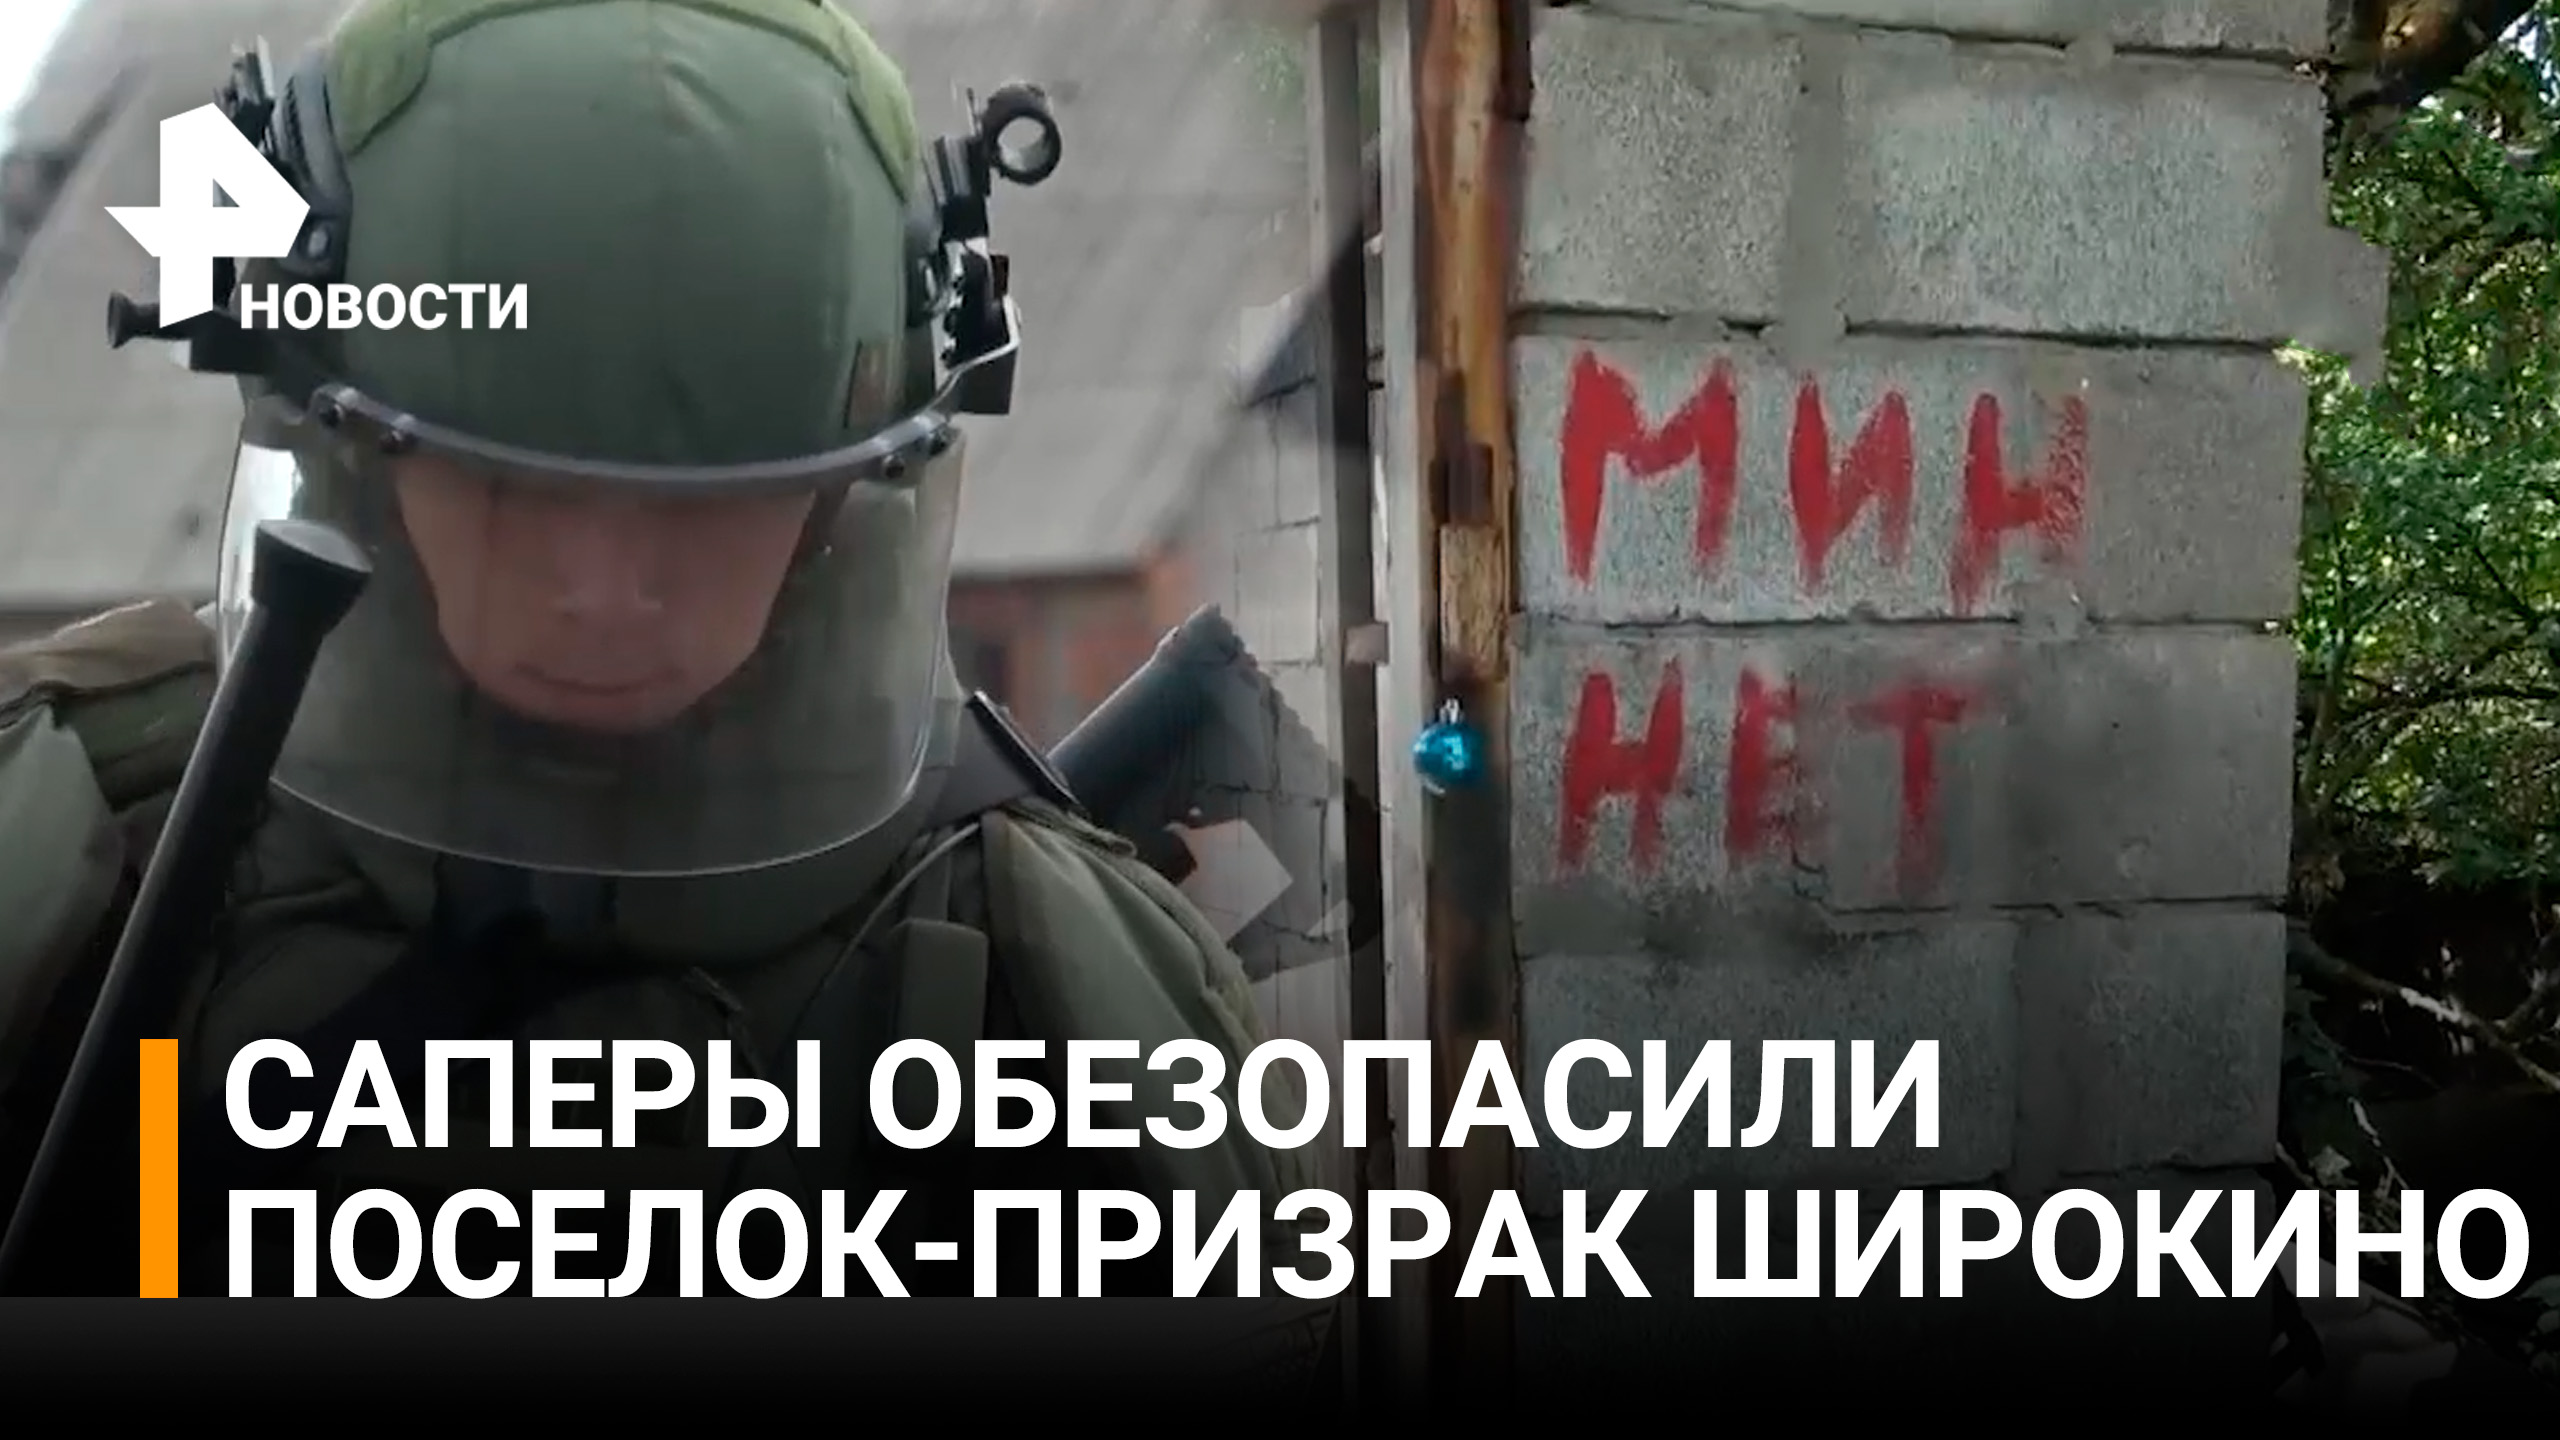 ДНР: Российские военные разминировали "поселок-призрак" Широкино / РЕН Новости